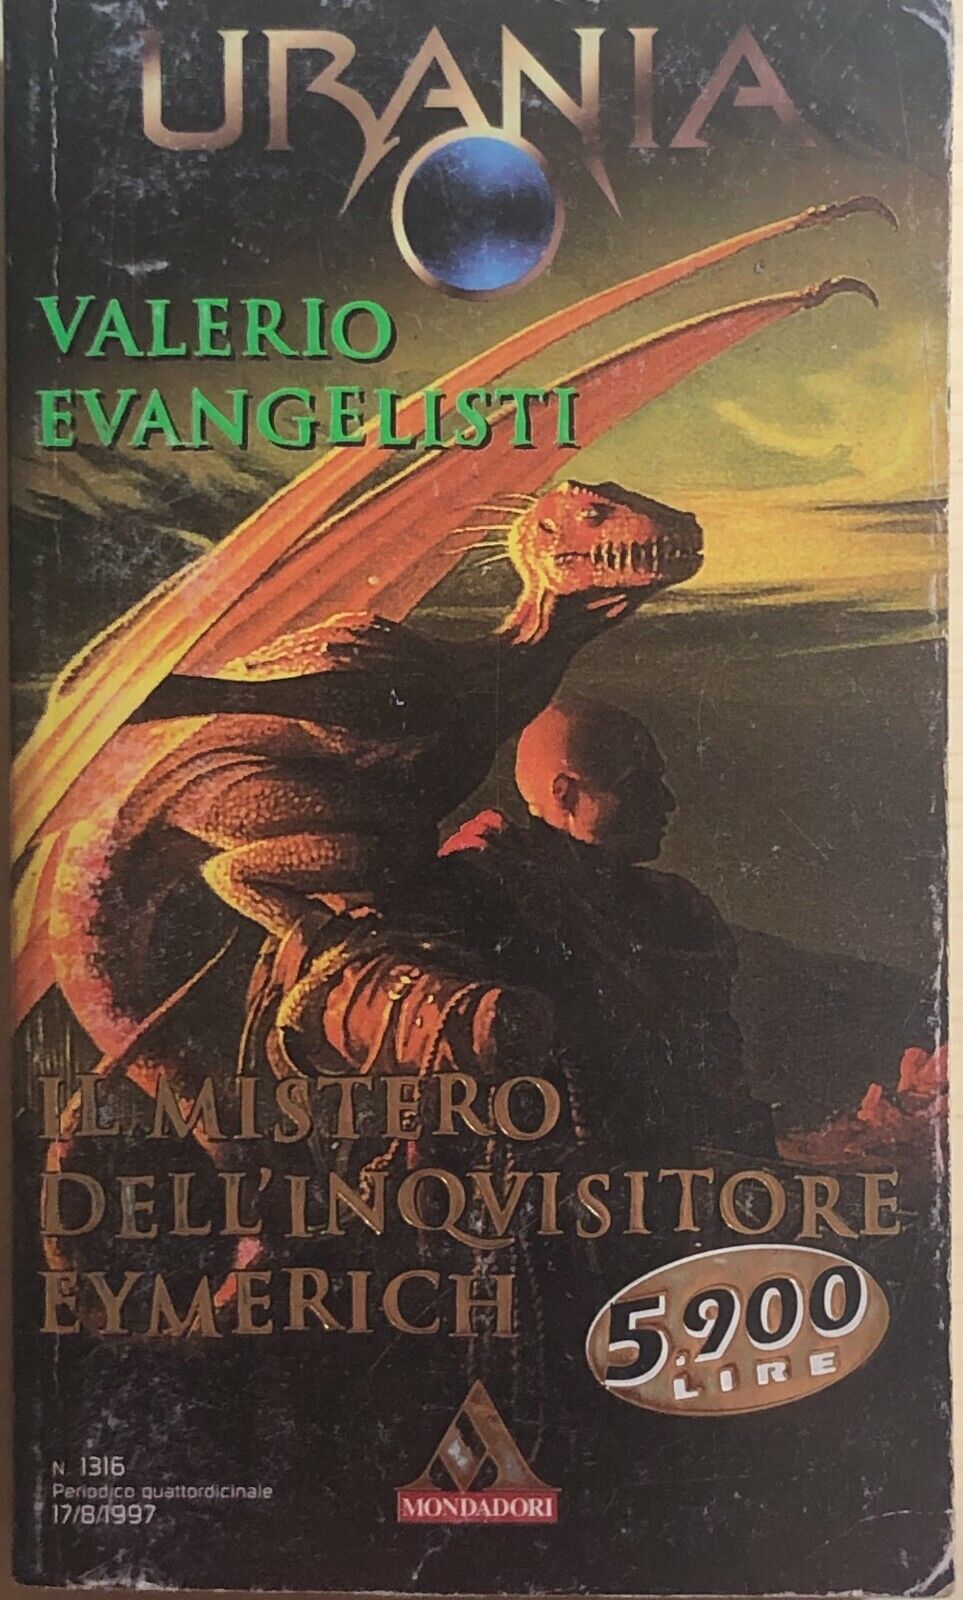 Il mistero delL'inquisitore Eymerich di Valerio Evangelisti, 1997, Arnoldo Monda